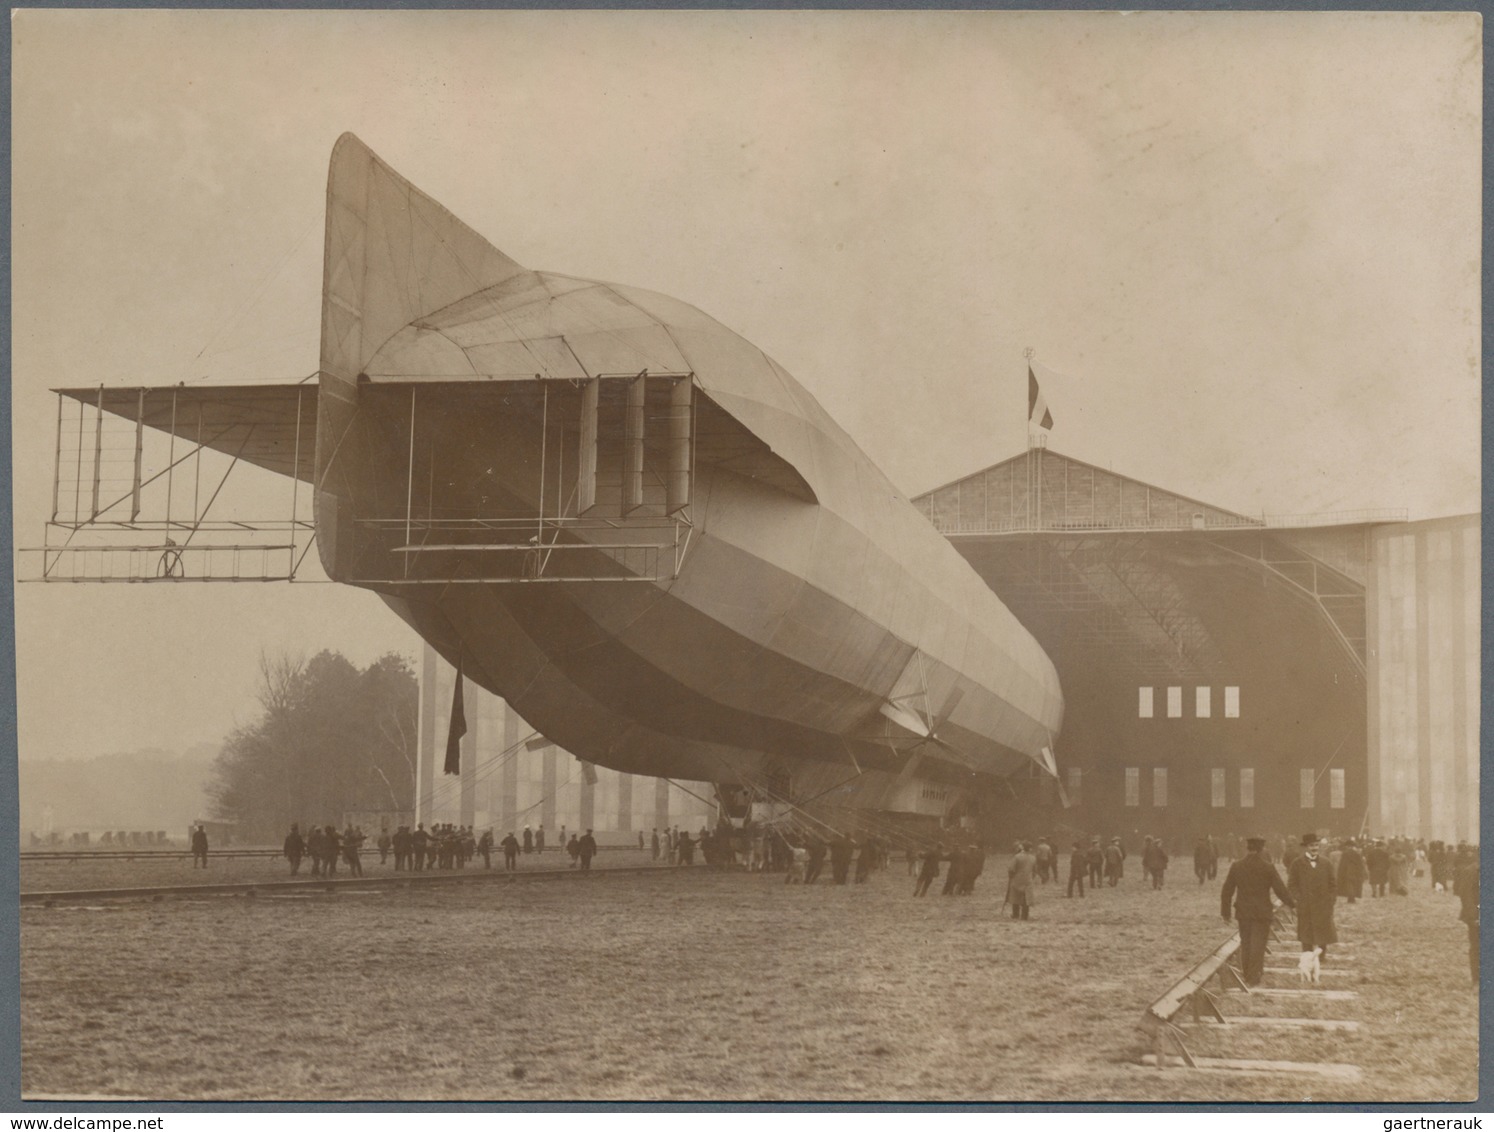 Thematik: Zeppelin / zeppelin: 1910/1945 (ca): Posten mit dutzenden Zeppelin Photos, dazu einige Pos